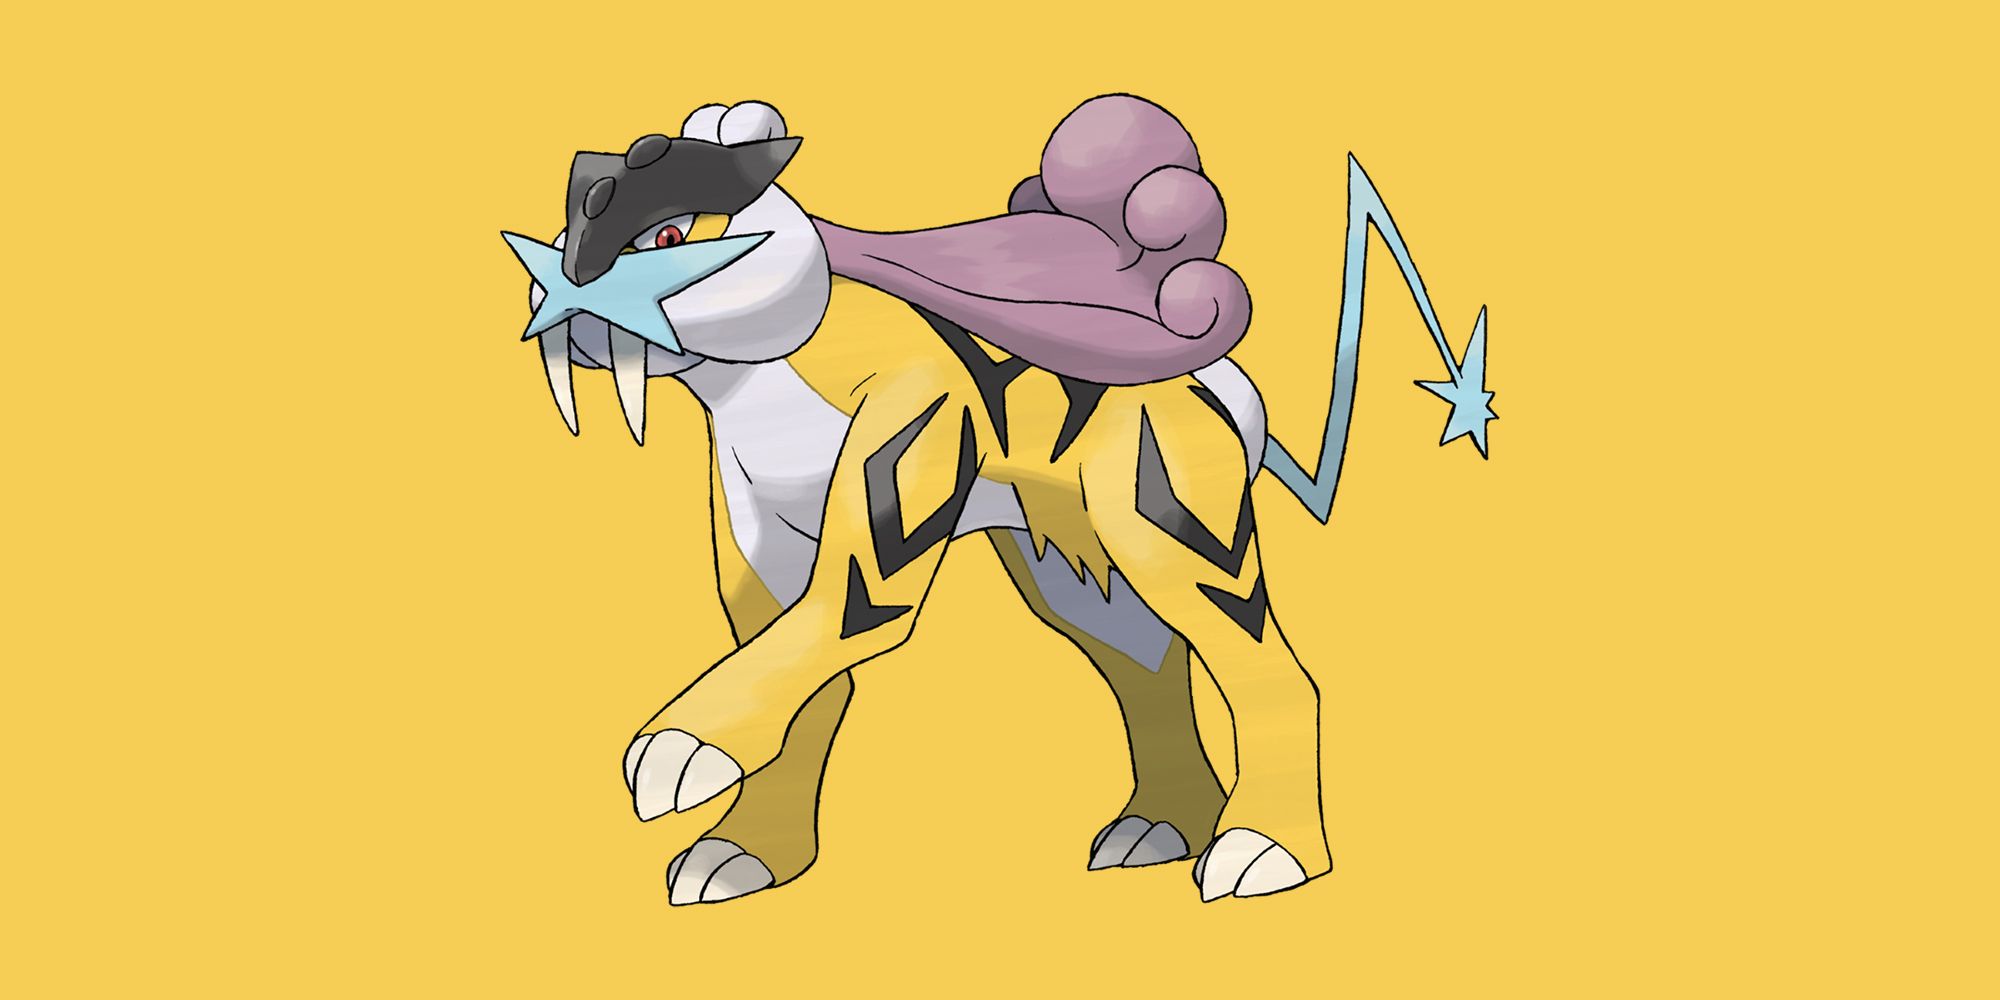 The Legendary Raikou raises its paw on a yellow background in Pokemon Go!